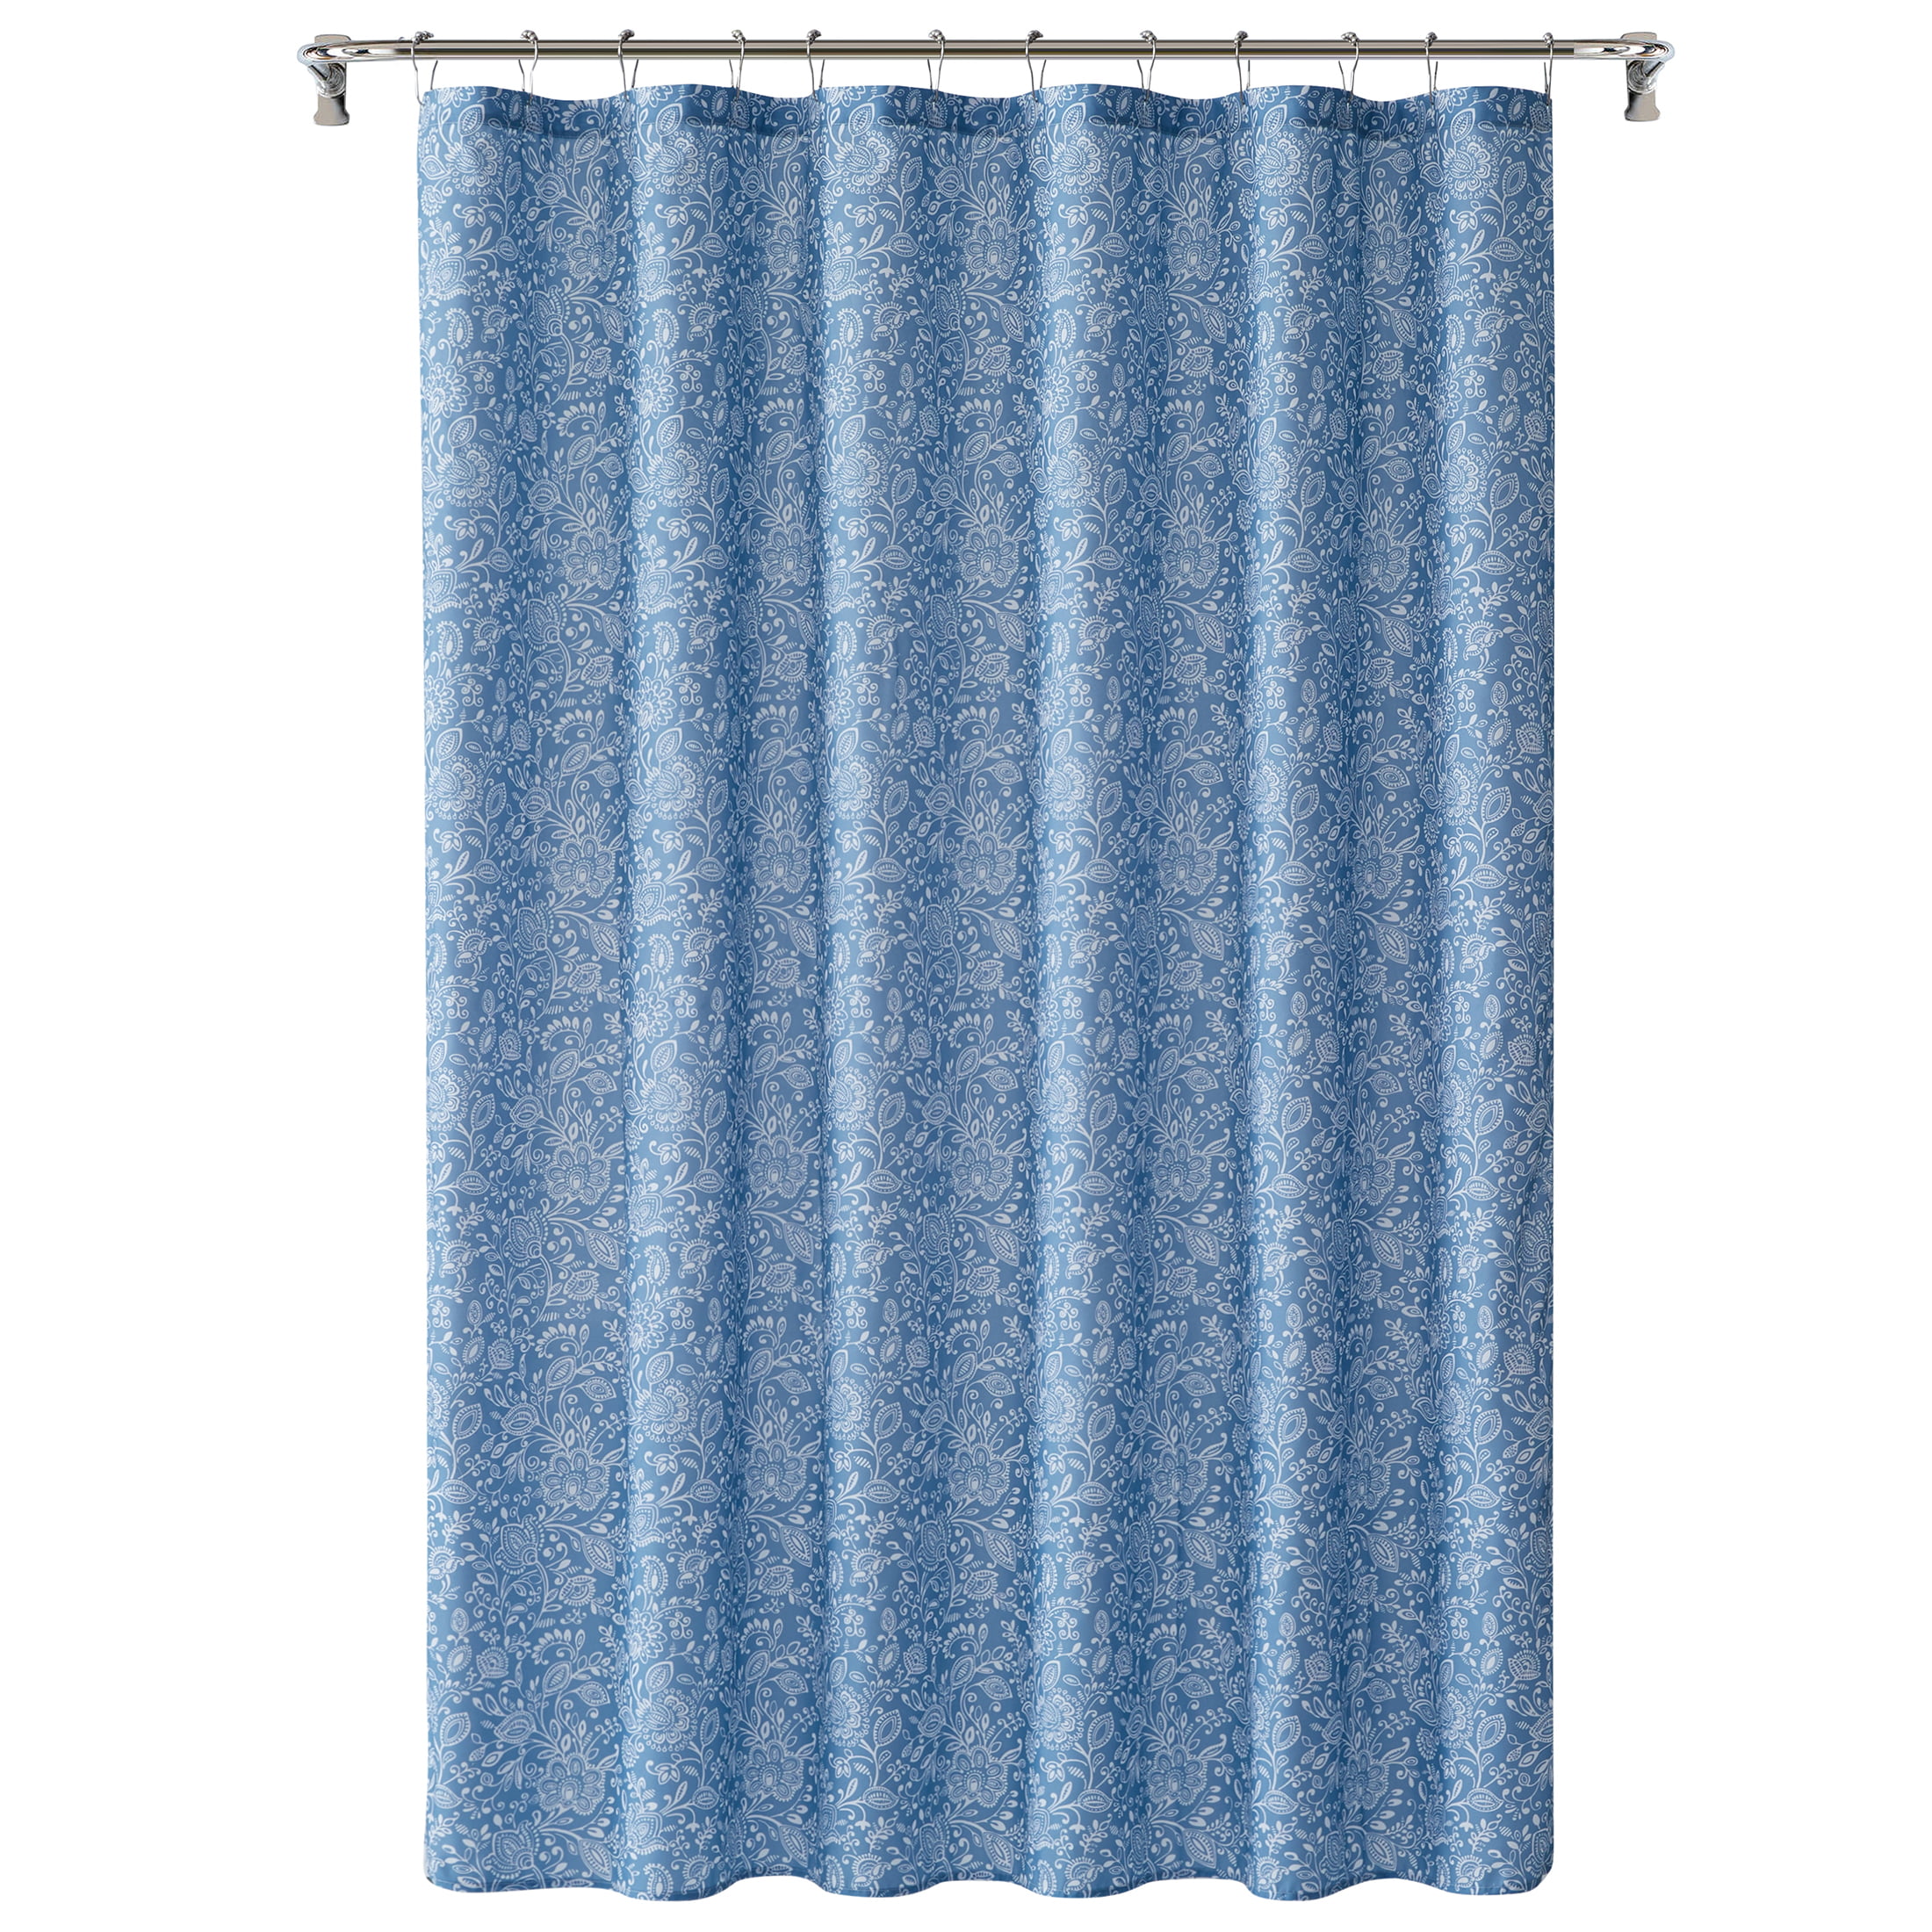 Mainstays Blue Jacobean Floral Shower Curtain Bath Set, 15 Pieces